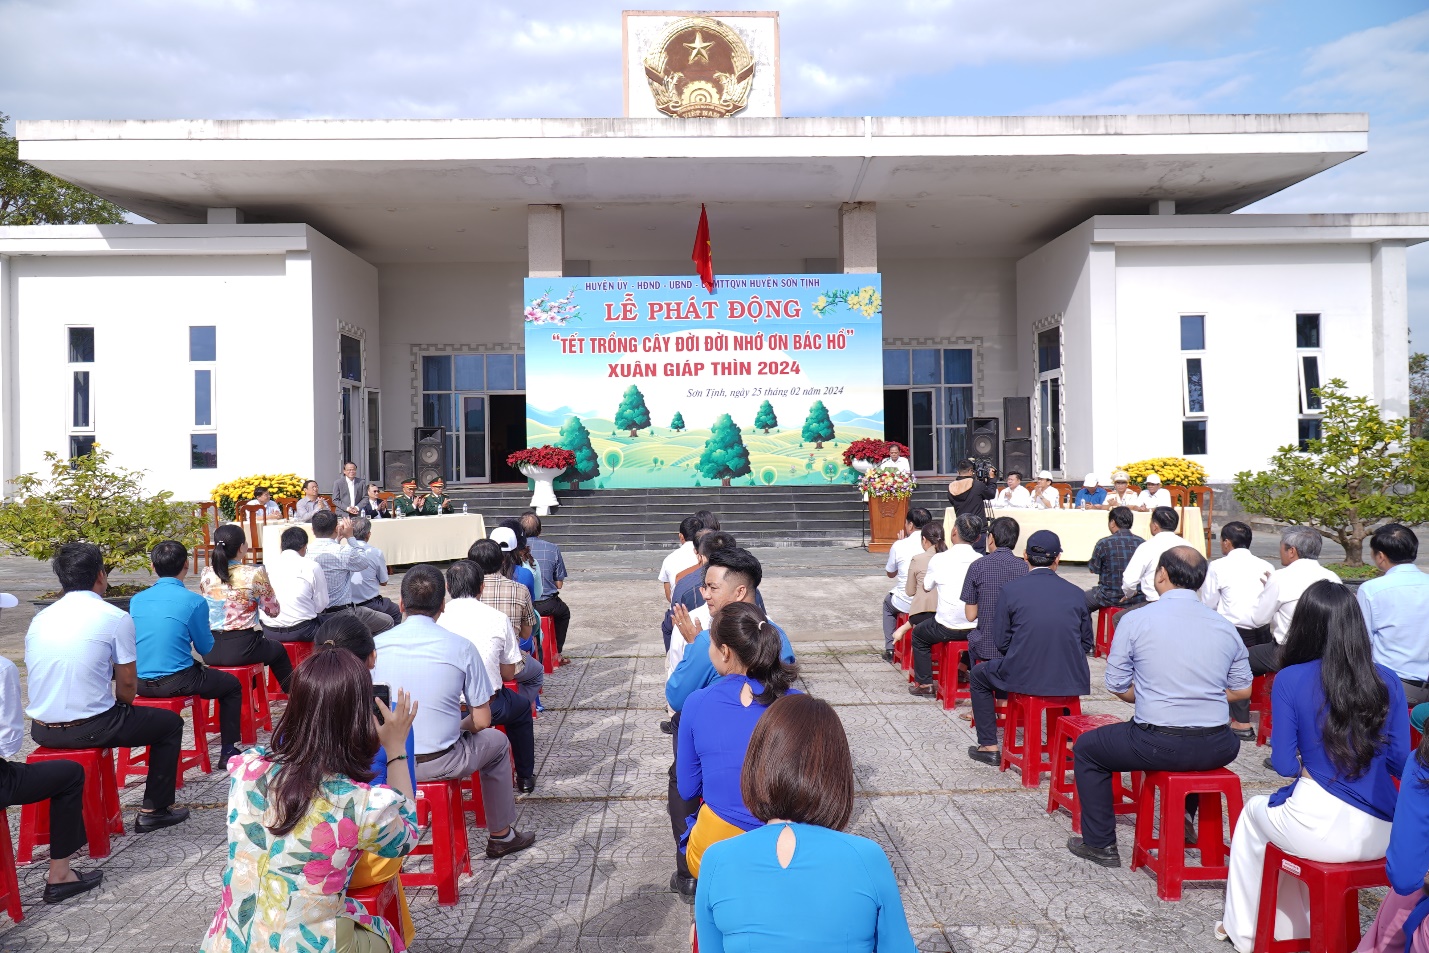 Lãnh đạo tỉnh dự Lễ phát động “Tết trồng cây đời đời nhớ ơn Bác Hồ” tại huyện Sơn Tịnh